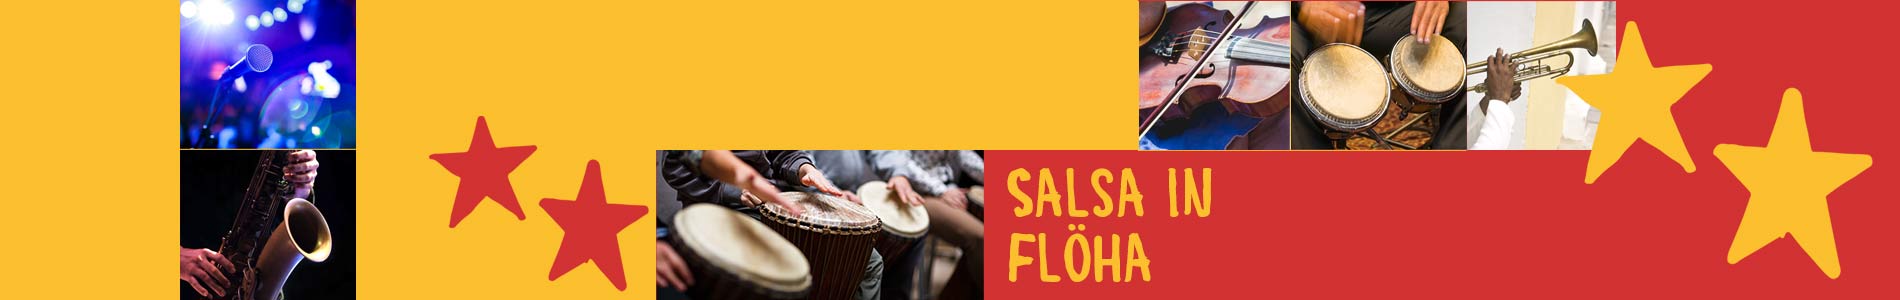 Salsa in Flöha – Salsa lernen und tanzen, Tanzkurse, Partys, Veranstaltungen